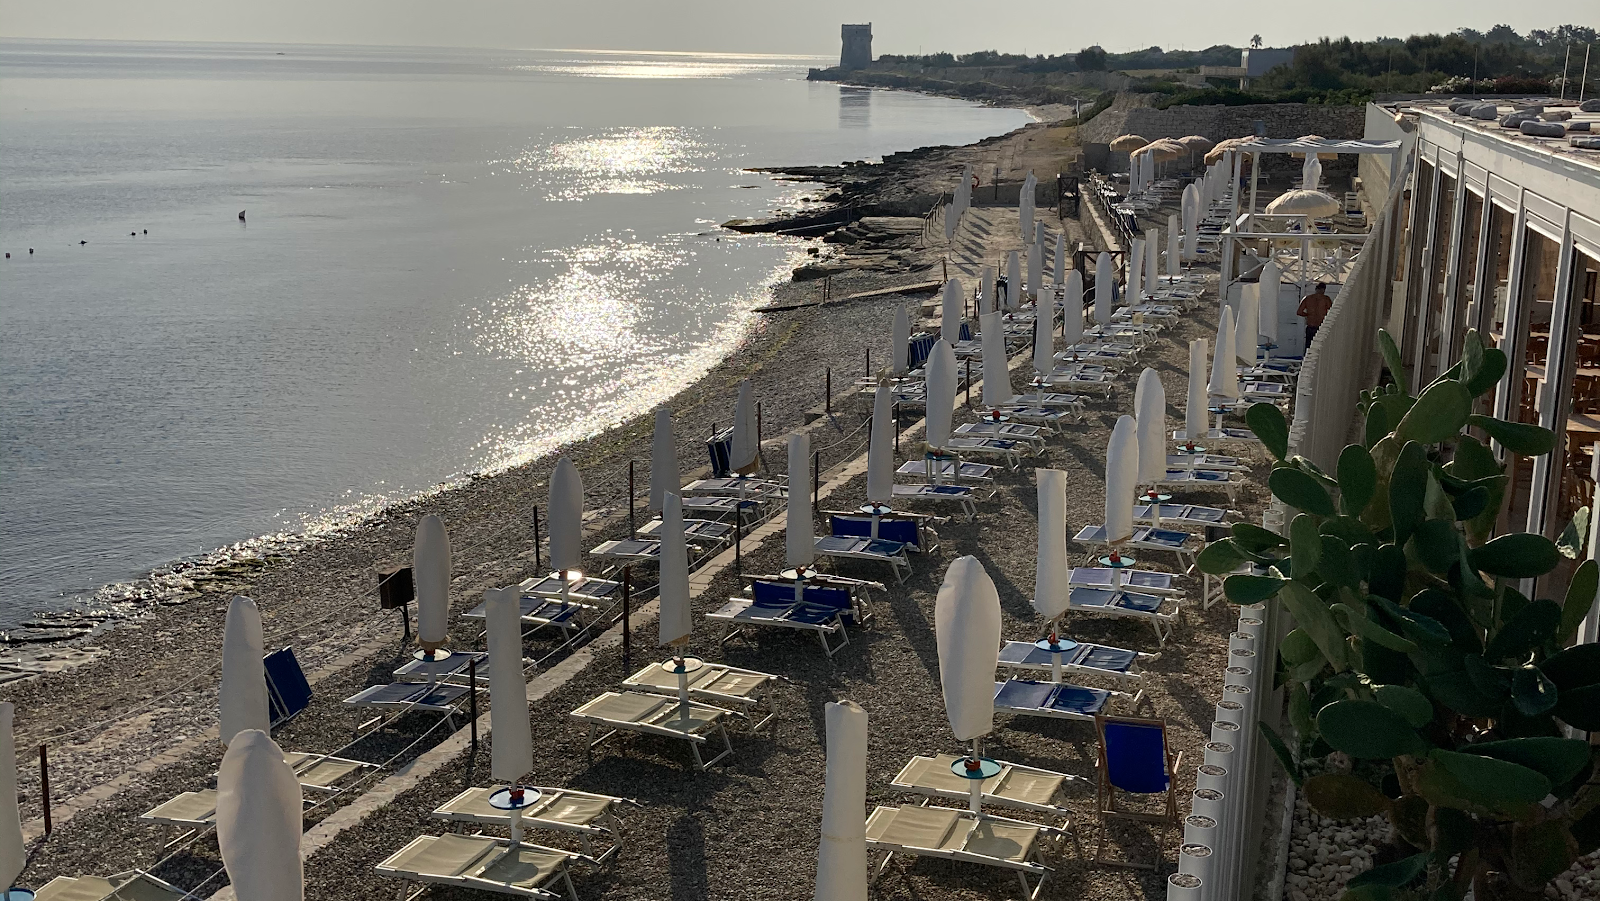 Zdjęcie Torre Calderina beach - popularne miejsce wśród znawców relaksu